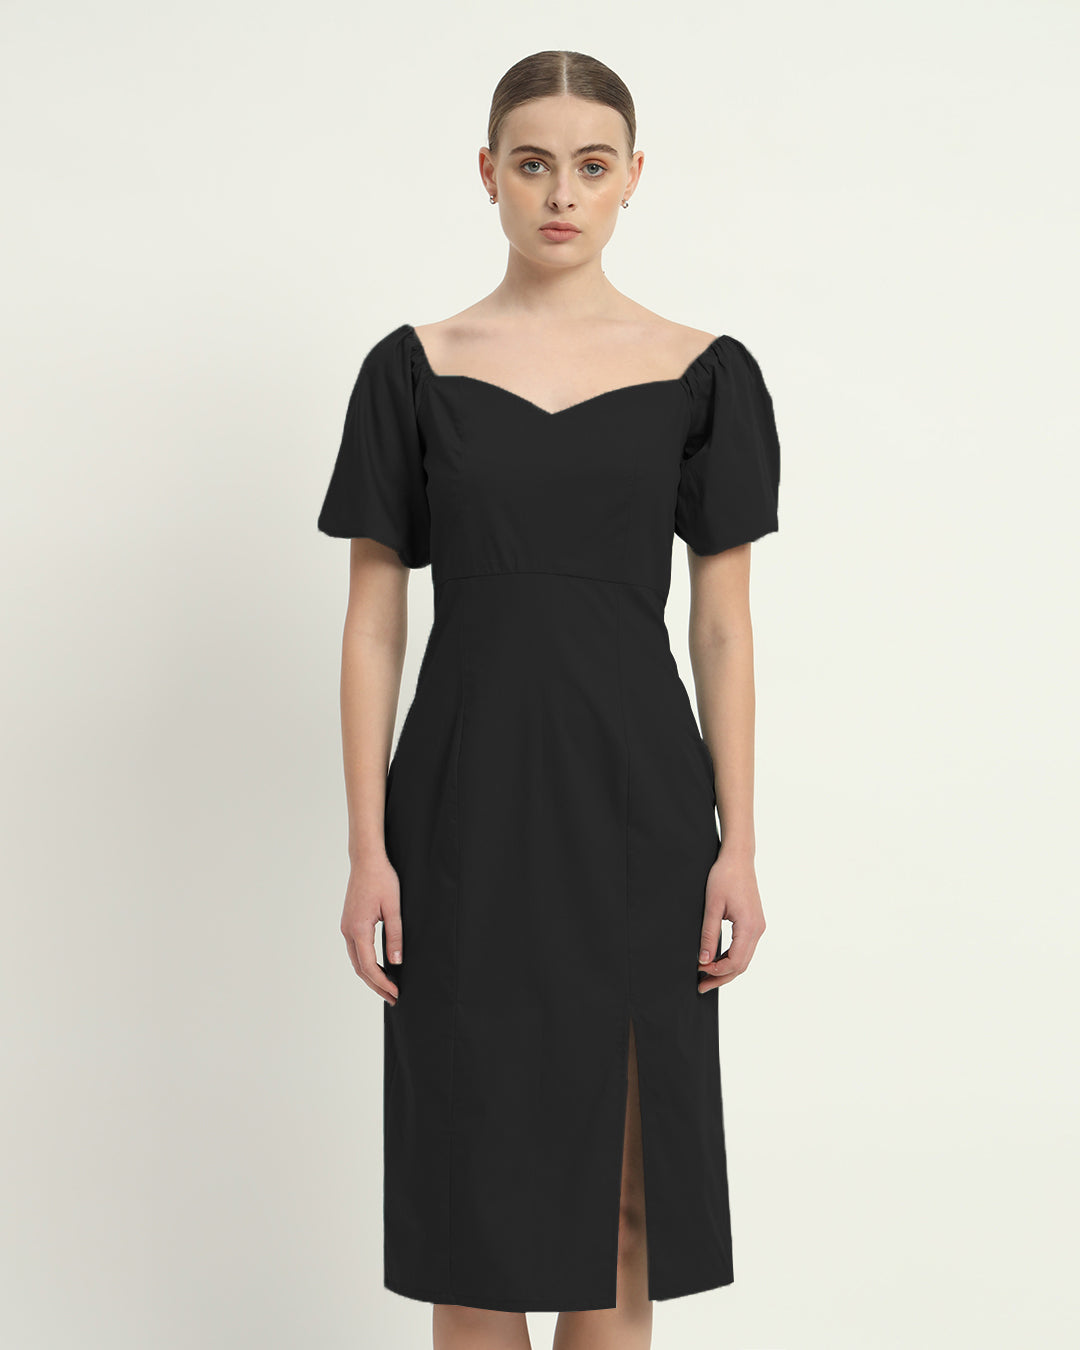 The Noir Erwin Cotton Dress